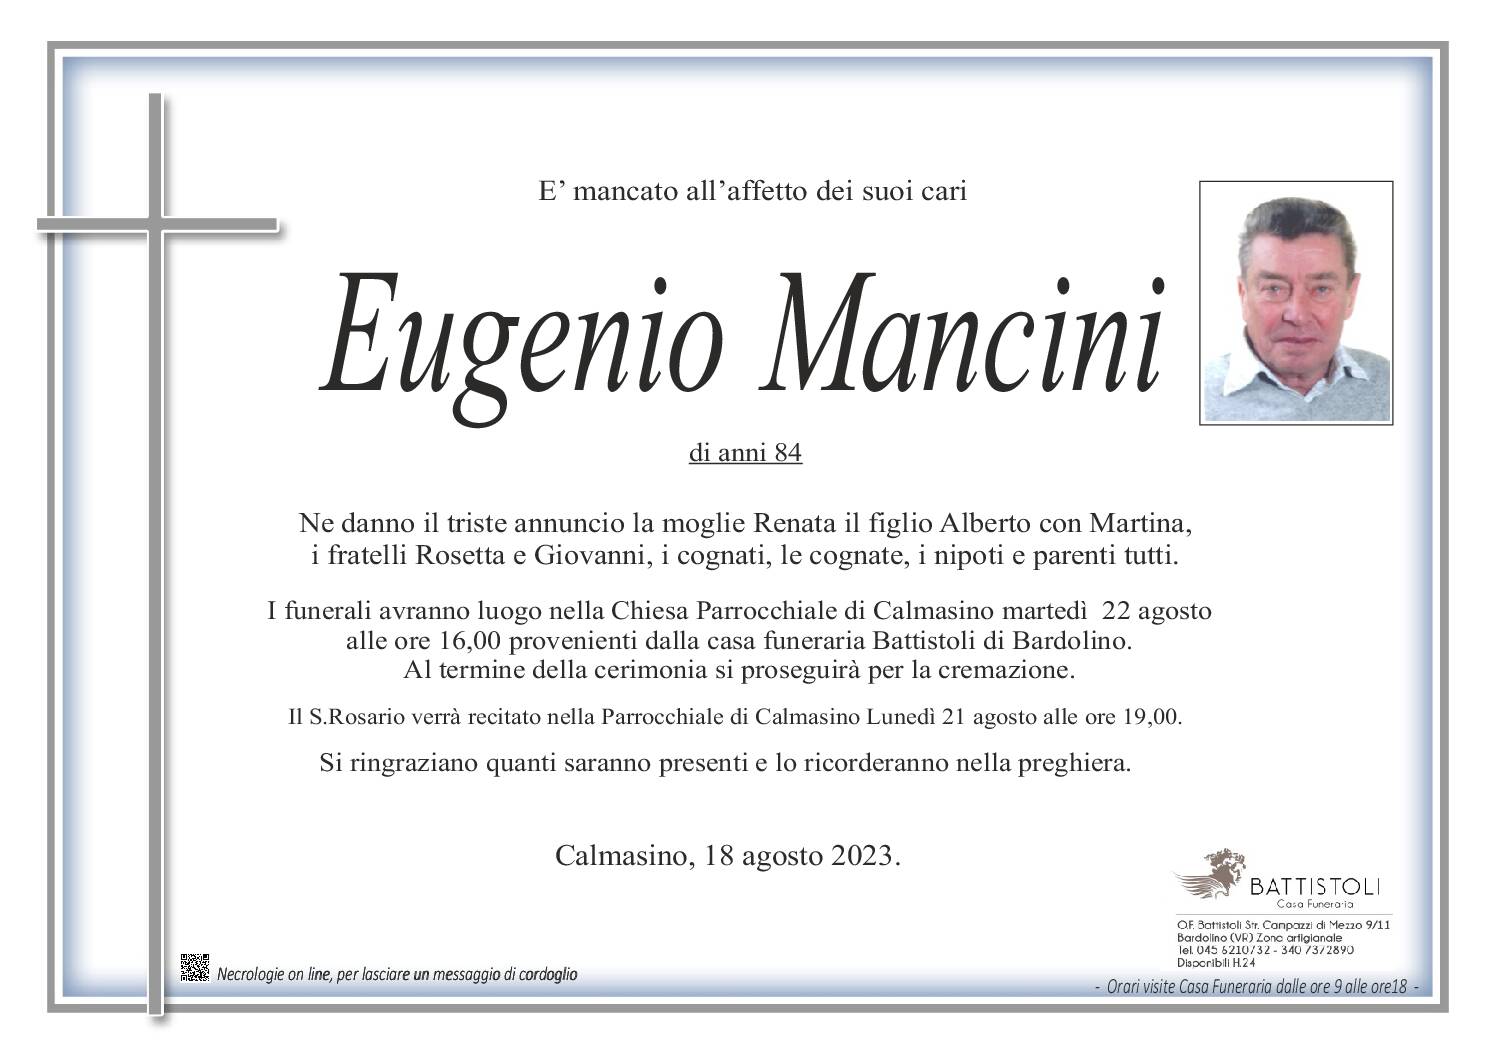 EUGENIO MANCINI